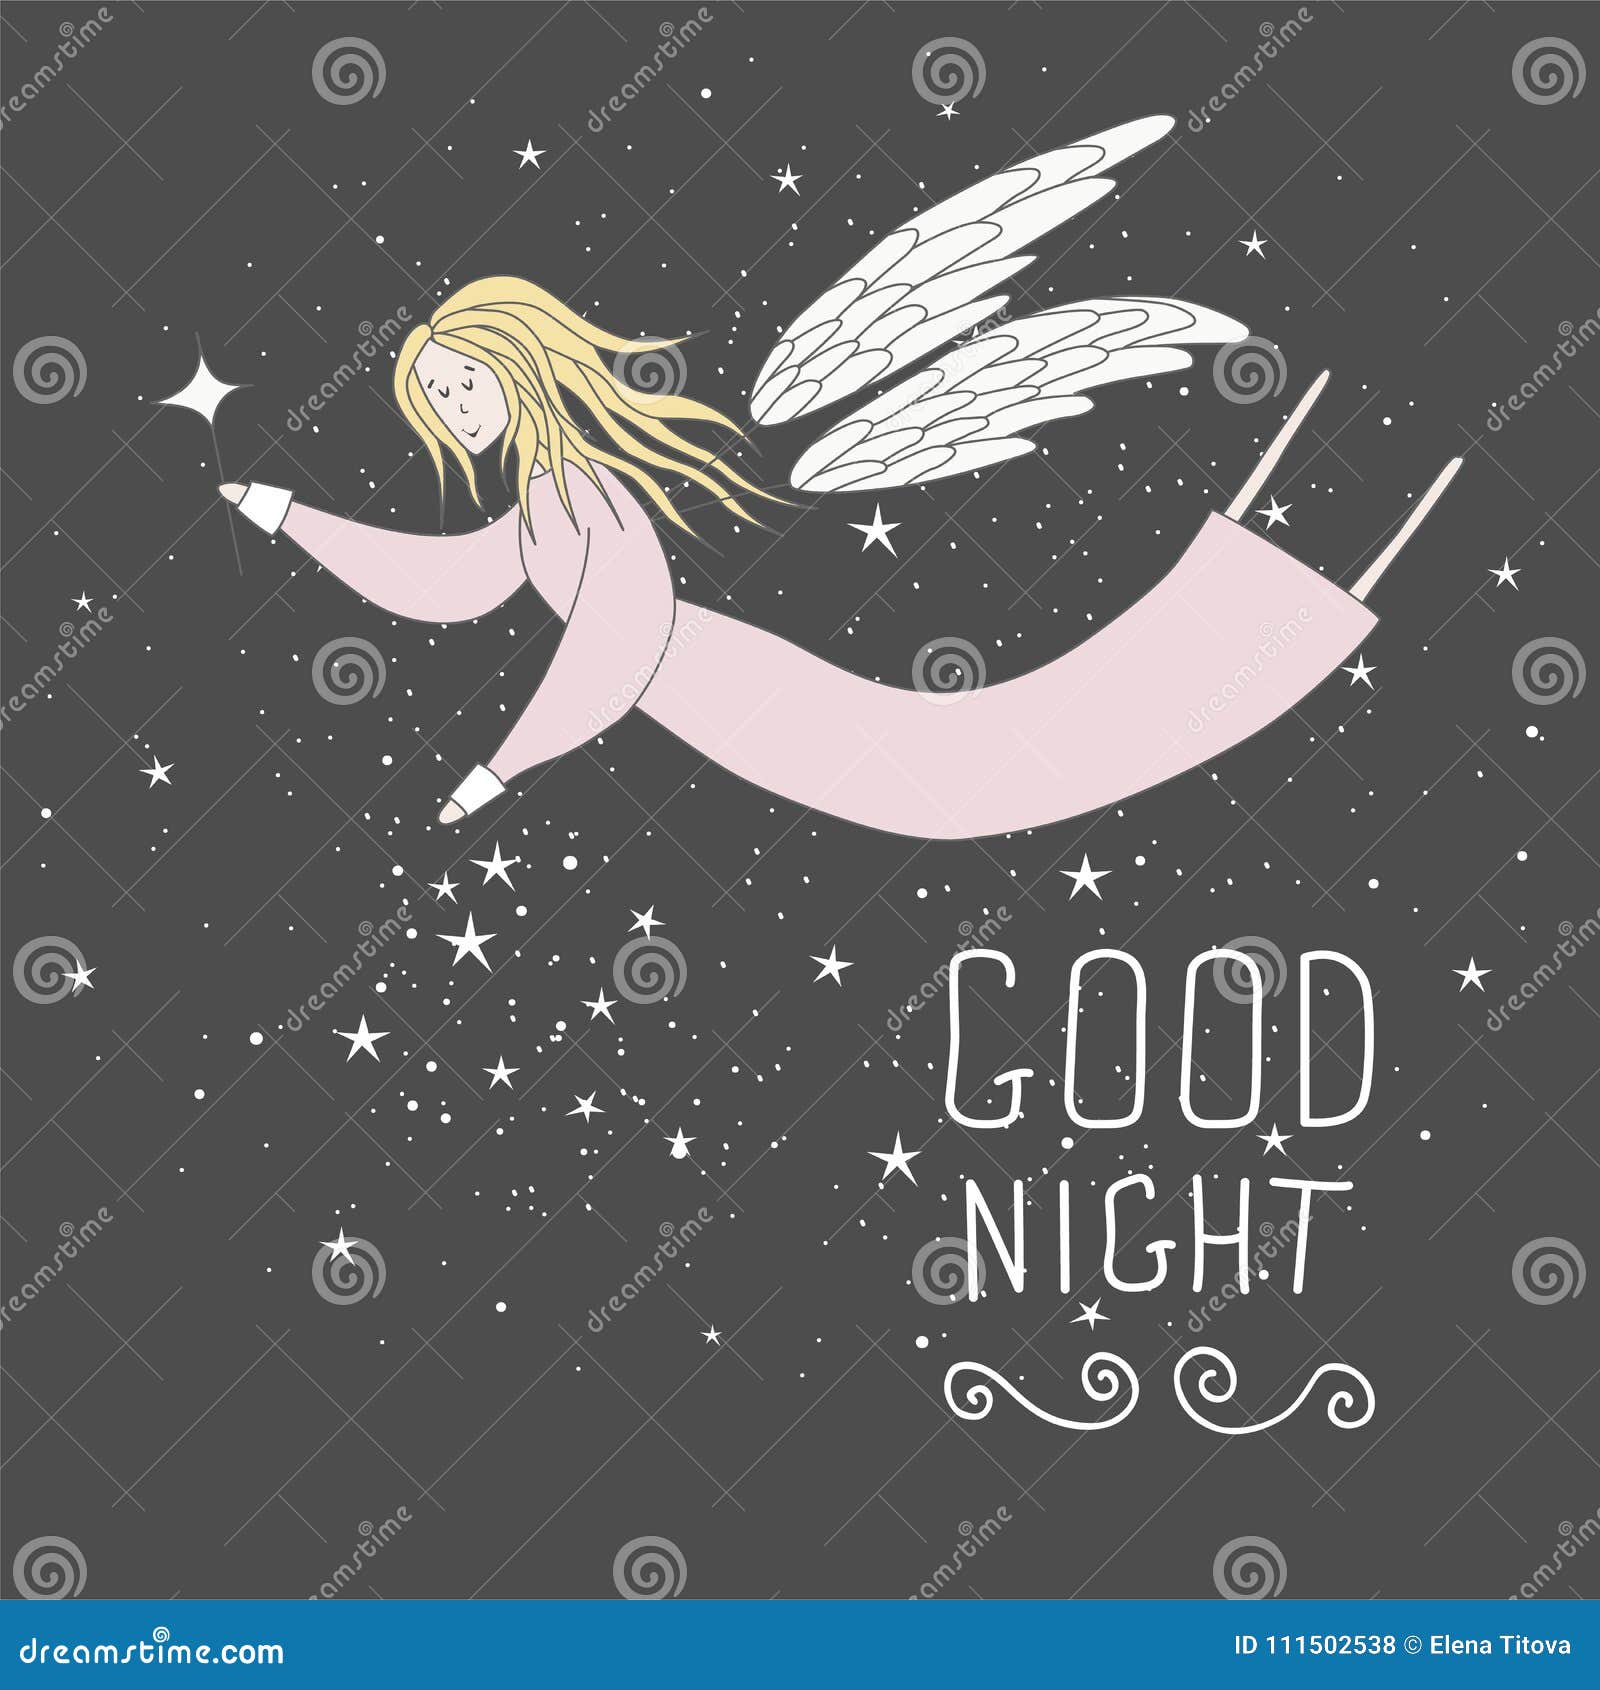 Flying Fairy in Night Sky Vector Illustration. Good Night Card ...